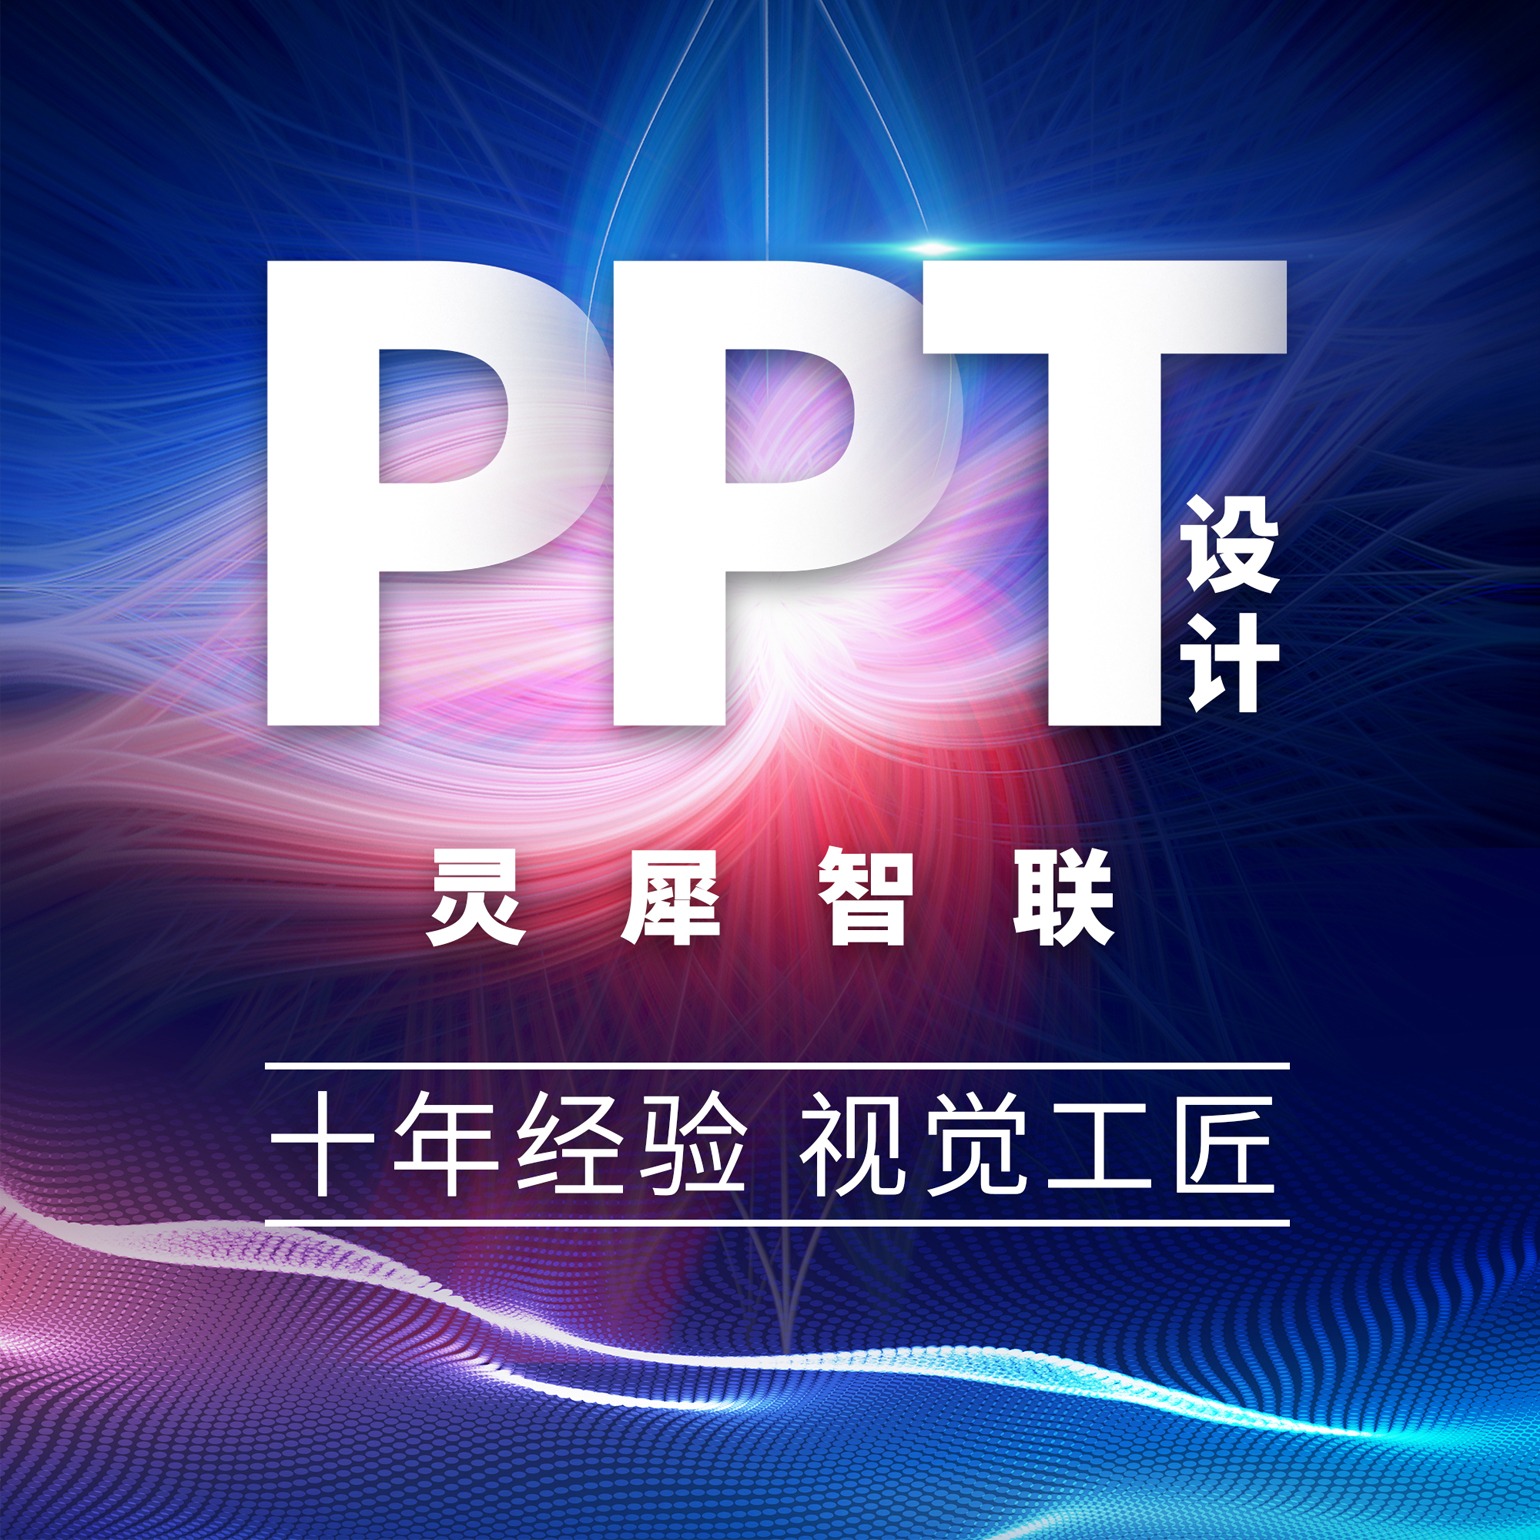 PPT设计PPT美化PPT代做优化定制企业简介路演招商课件